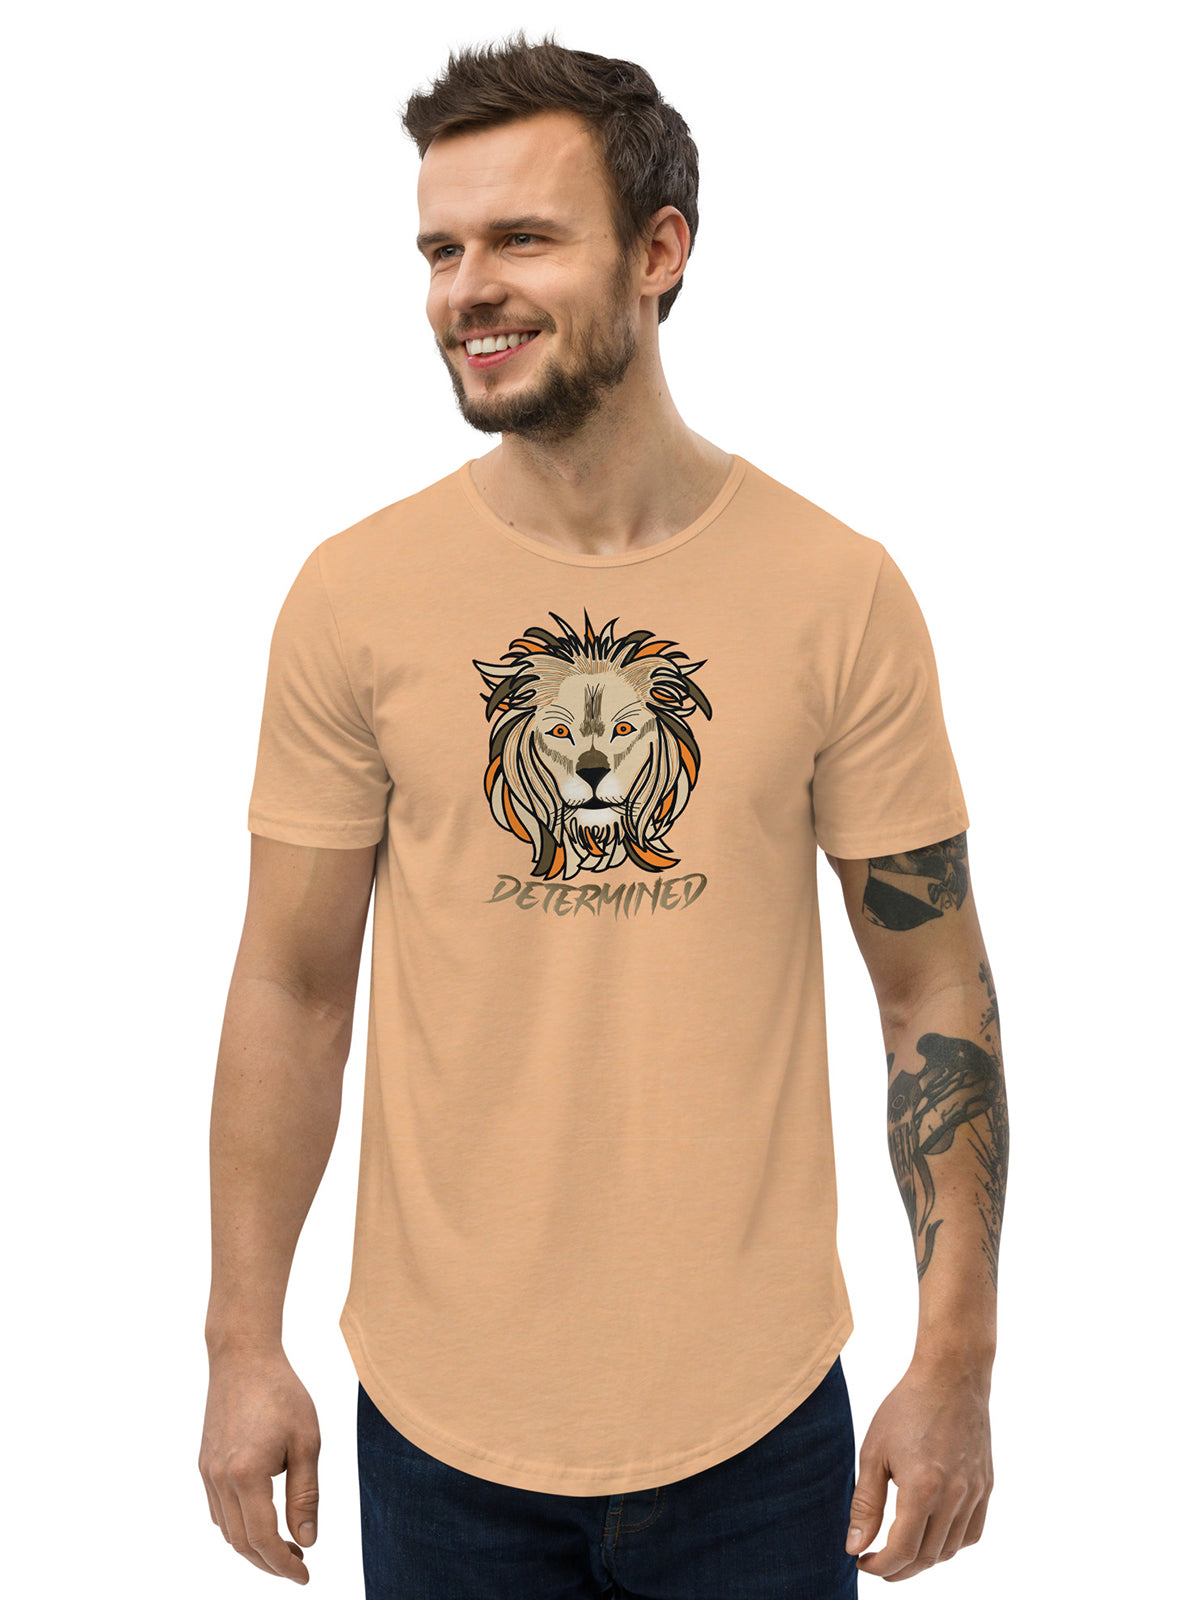 Determined Leon - Premium T-Shirt